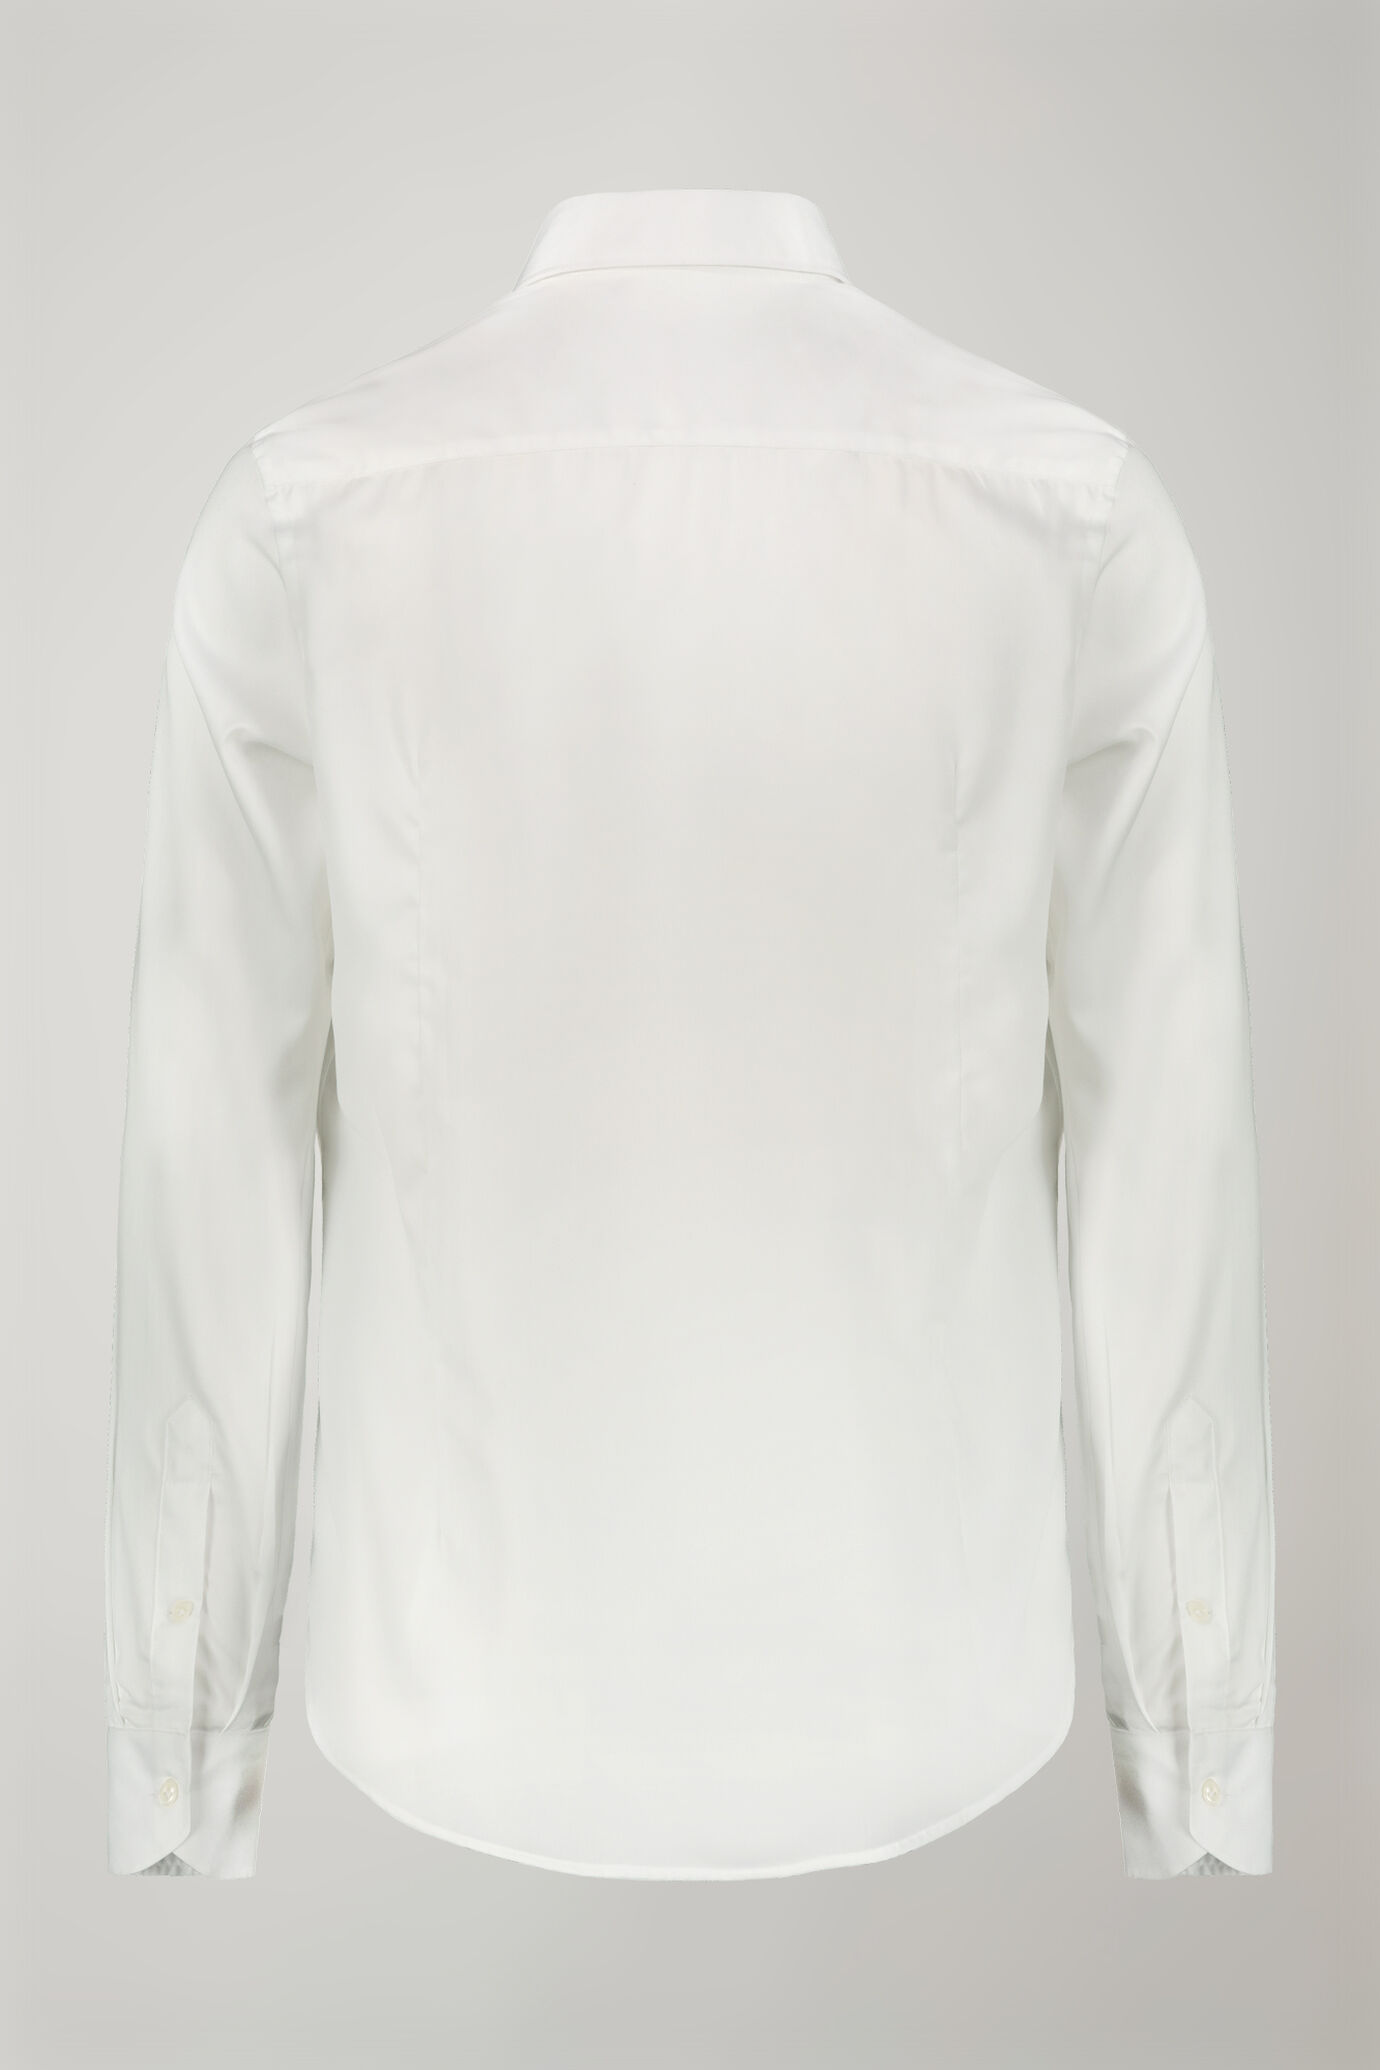 Camicia uomo collo classico 100% cotone tessuto armaturato tinta unita regular fit image number 6